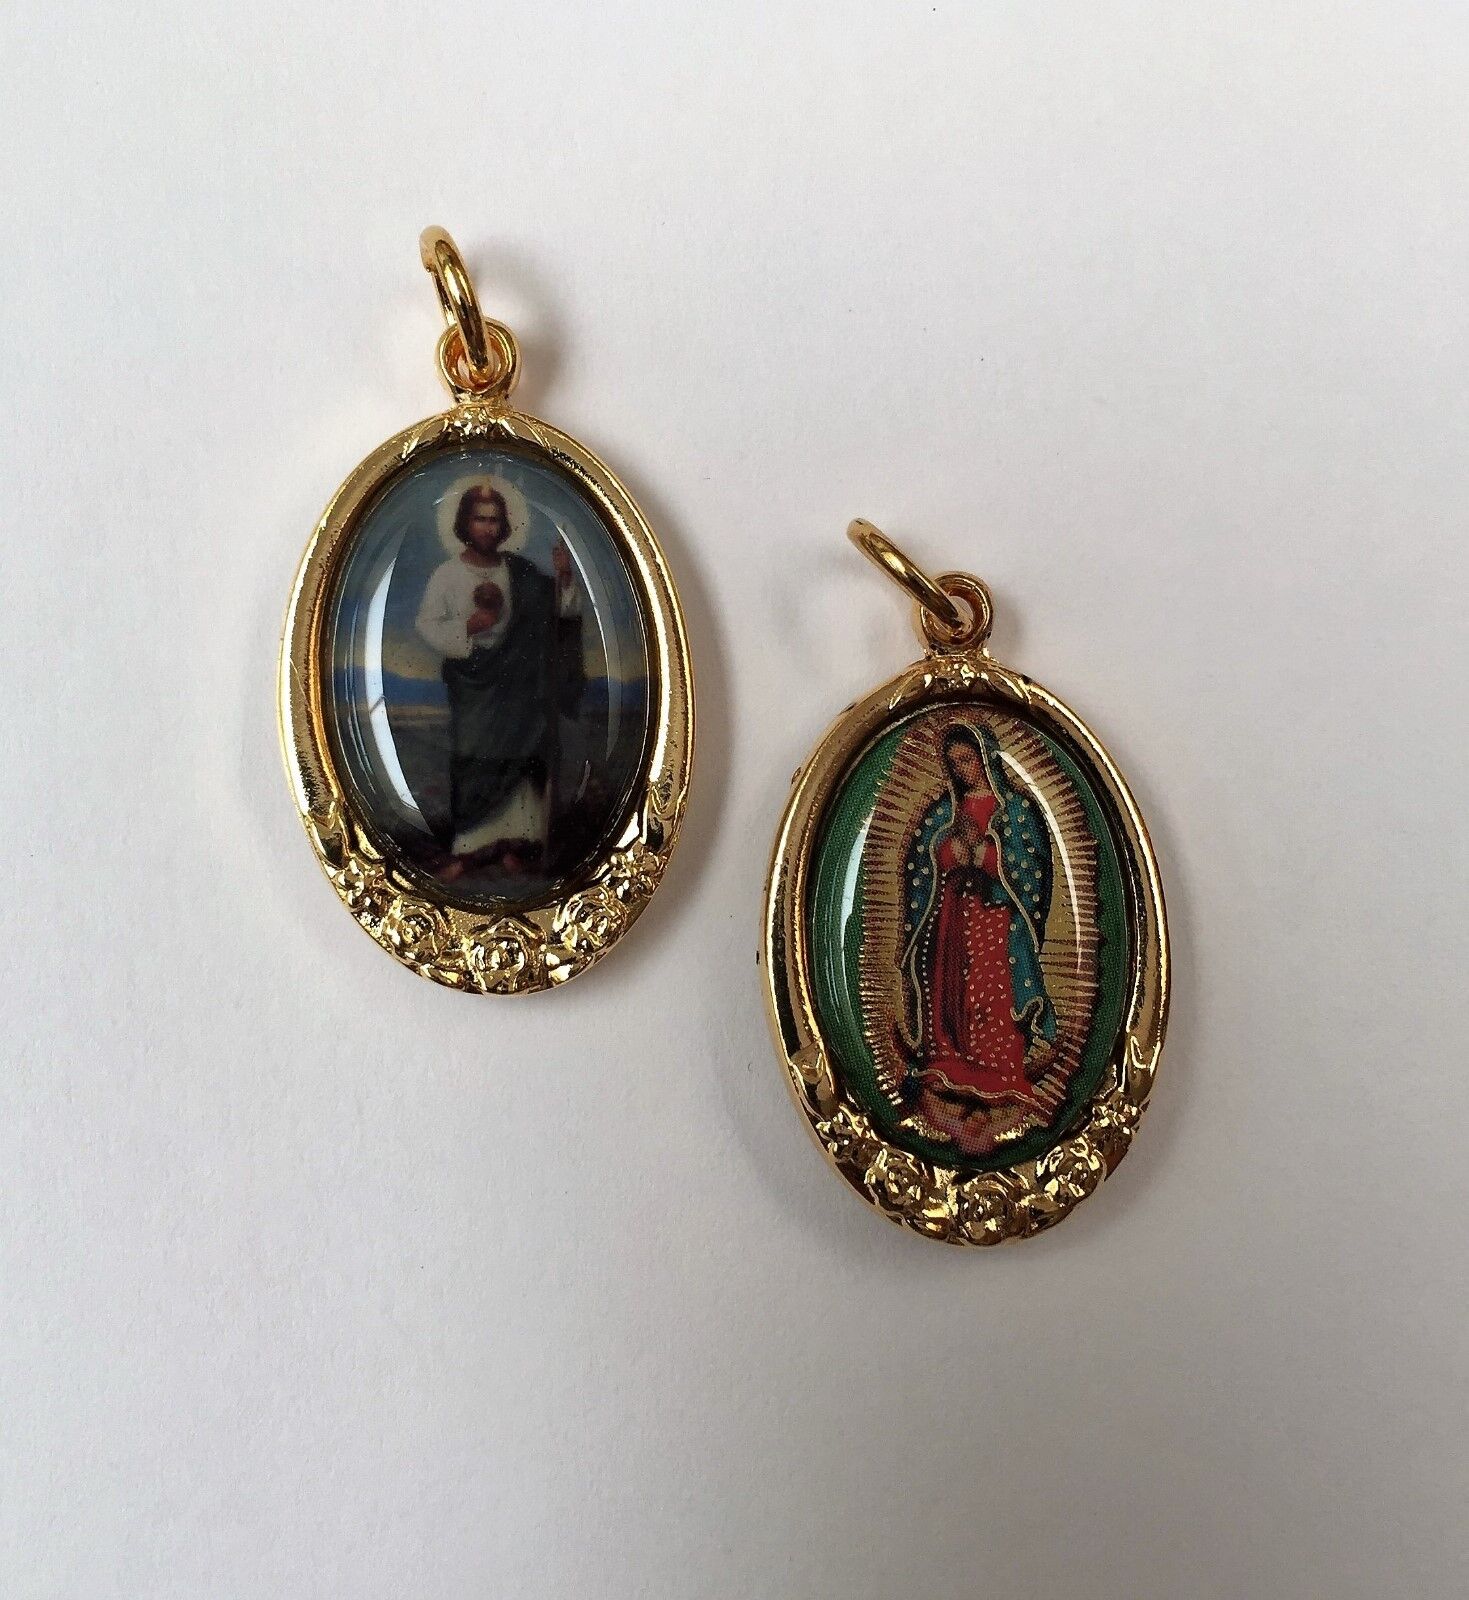 St. Jude Our Lady of Guadalupe Medal/Medalla San Judas y Virgen de Gaudalu 17015